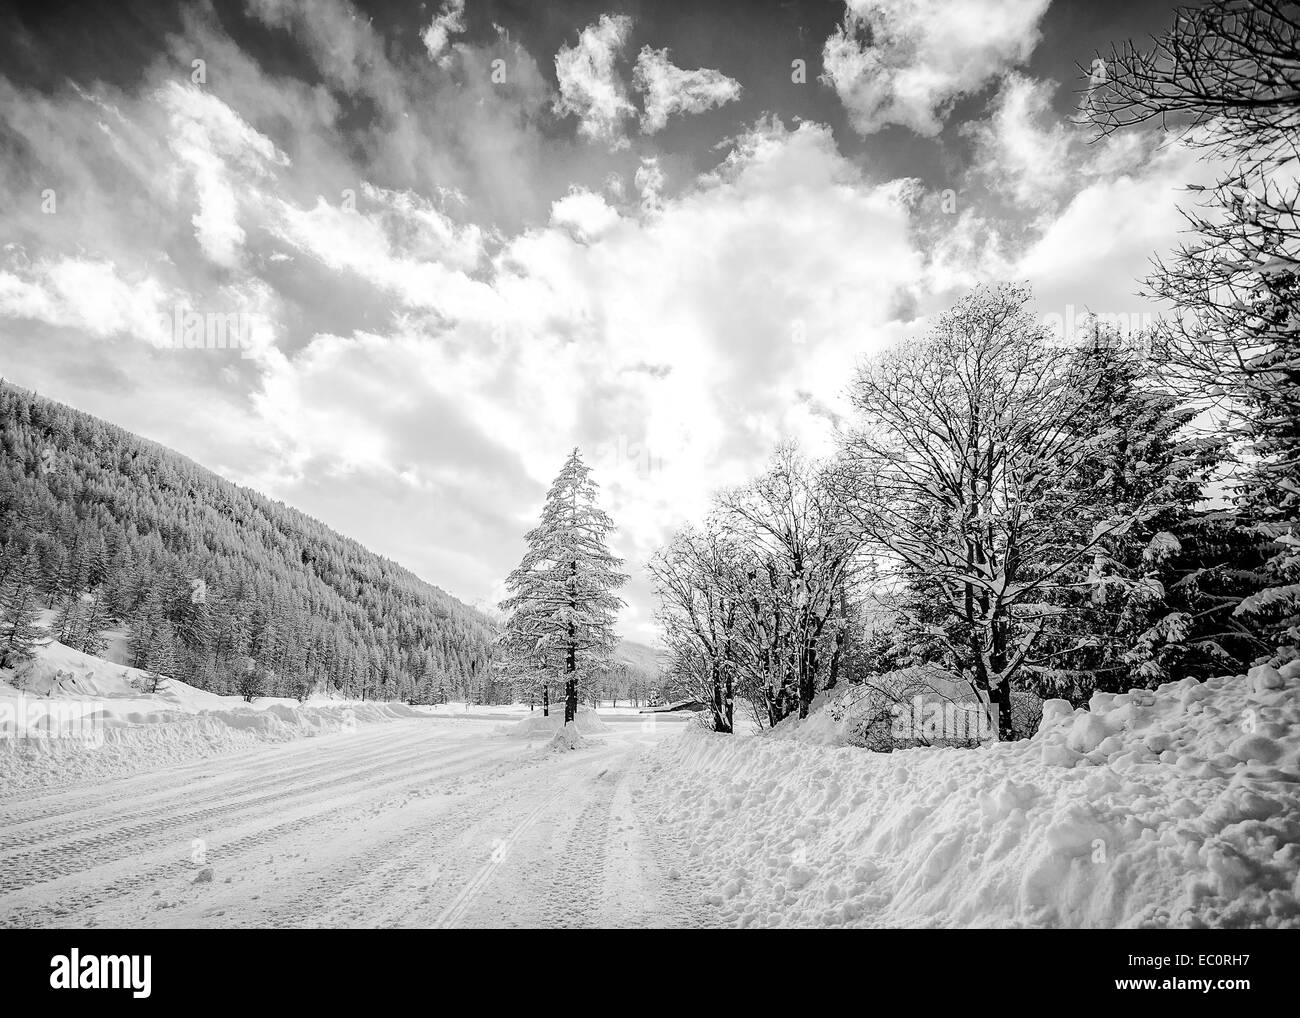 Magnifique paysage de montagne, une scène de routes rurales couvertes par la neige ; dispersés ciel nuageux ; conversion en noir et blanc. Banque D'Images